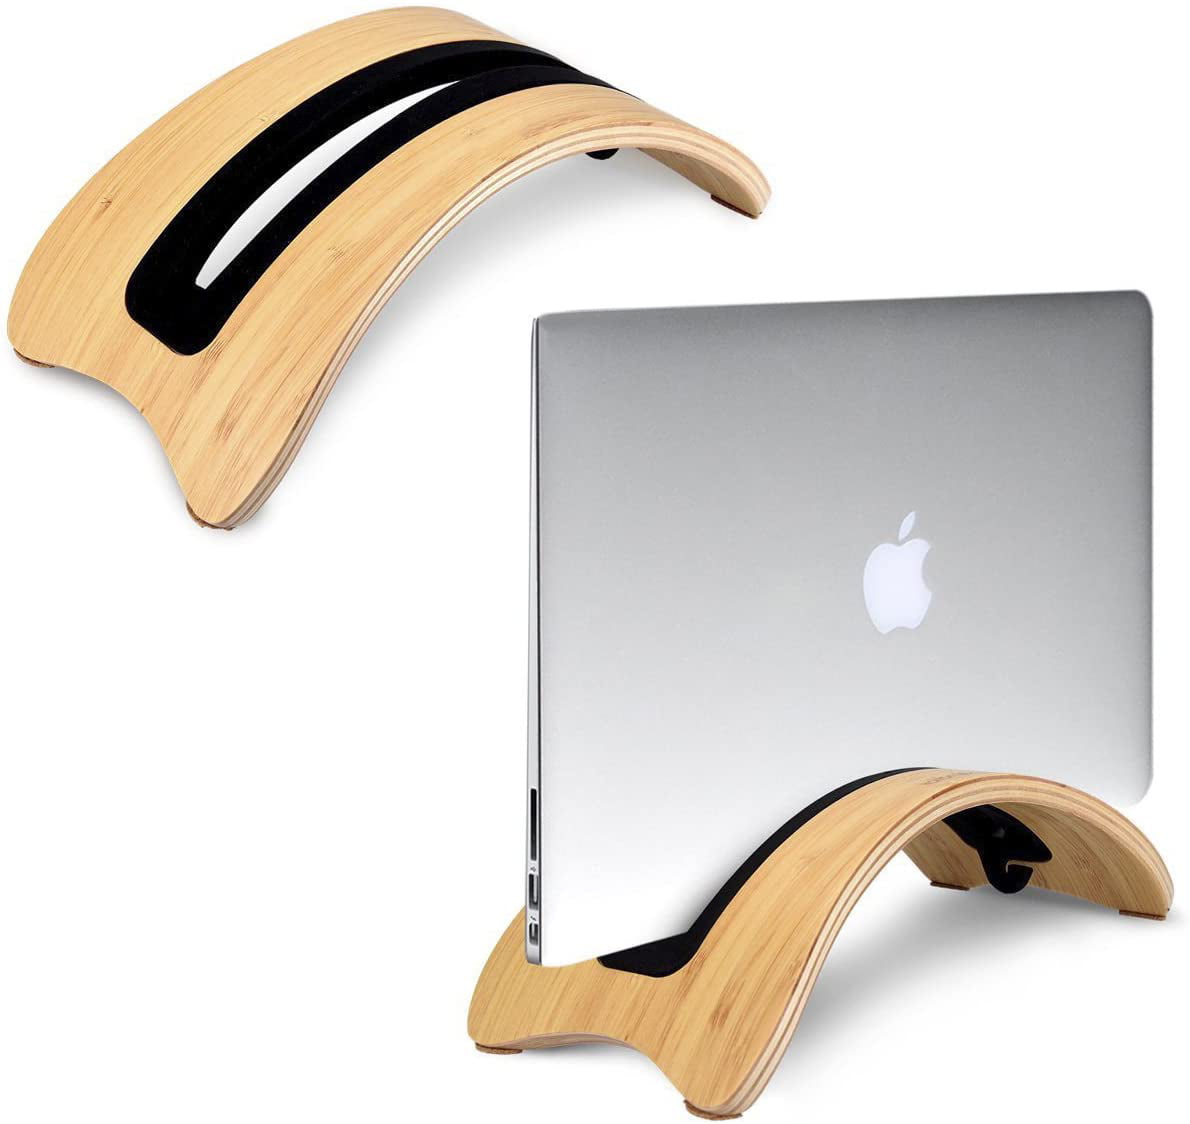 SamDi Wooden Walnut Desk Holder Stand Display Dock For Macbook Air Pro Retina 